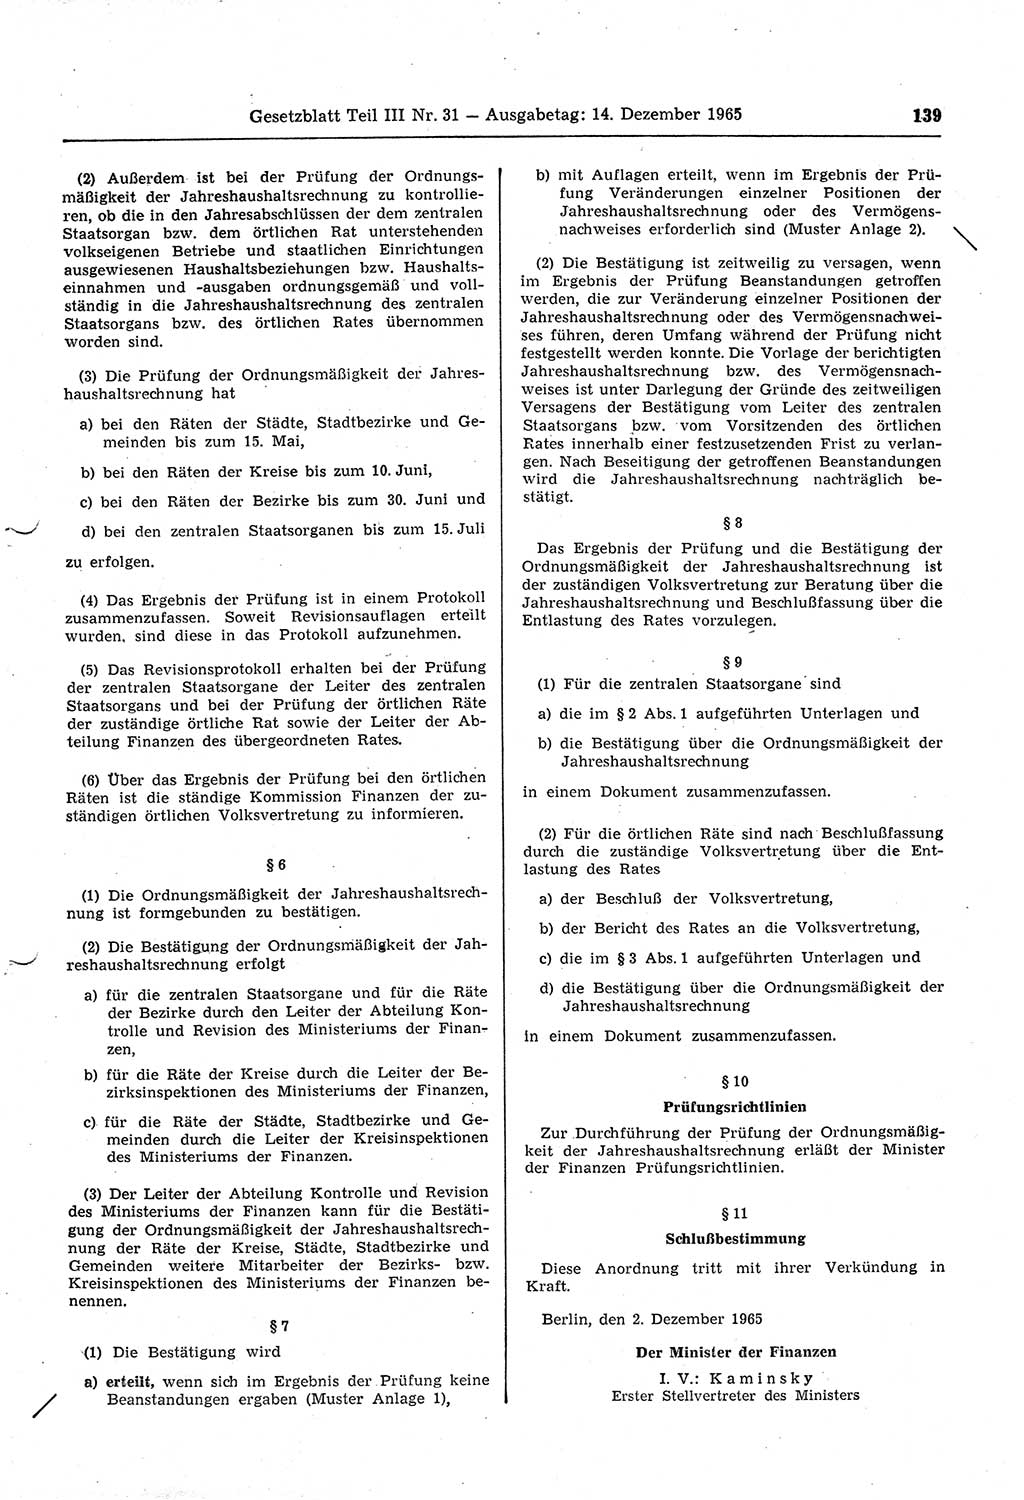 Gesetzblatt (GBl.) der Deutschen Demokratischen Republik (DDR) Teil ⅠⅠⅠ 1965, Seite 139 (GBl. DDR ⅠⅠⅠ 1965, S. 139)